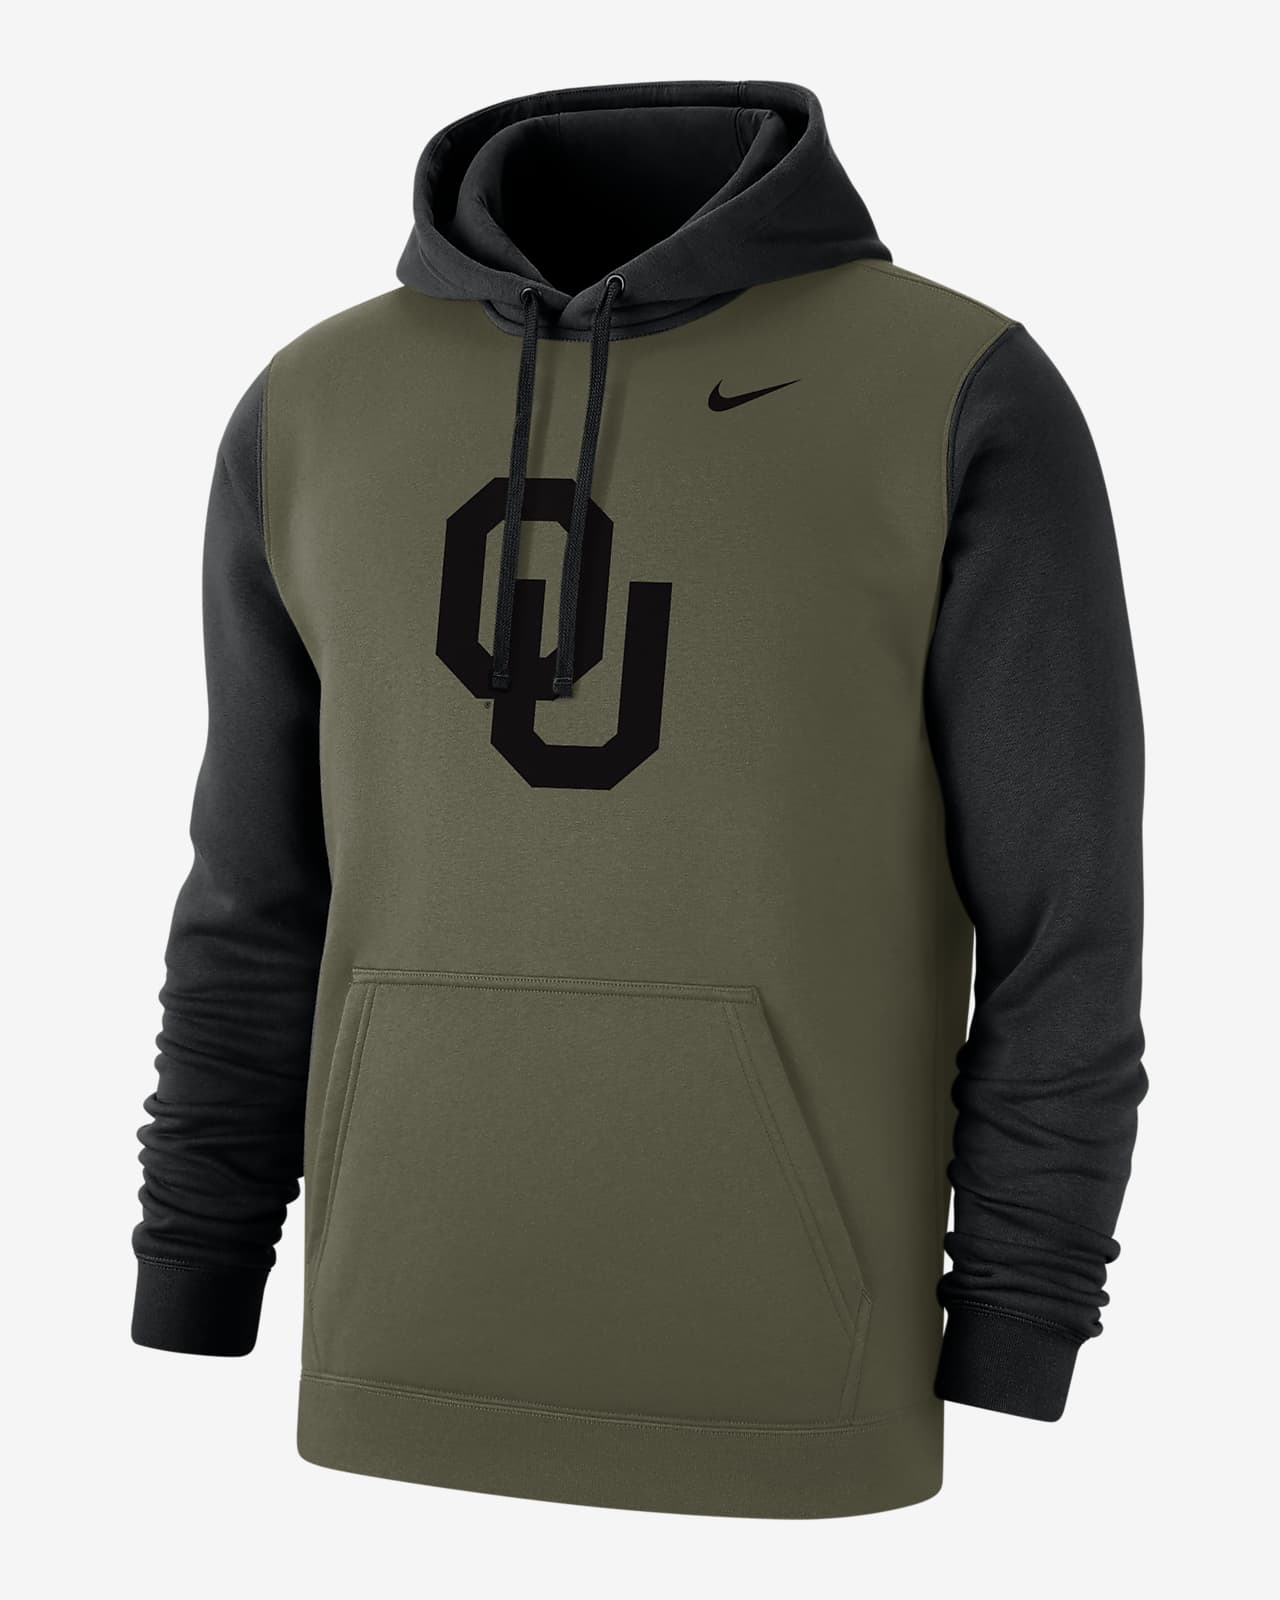 Oklahoma Olive Pack Men's Nike College Hoodie